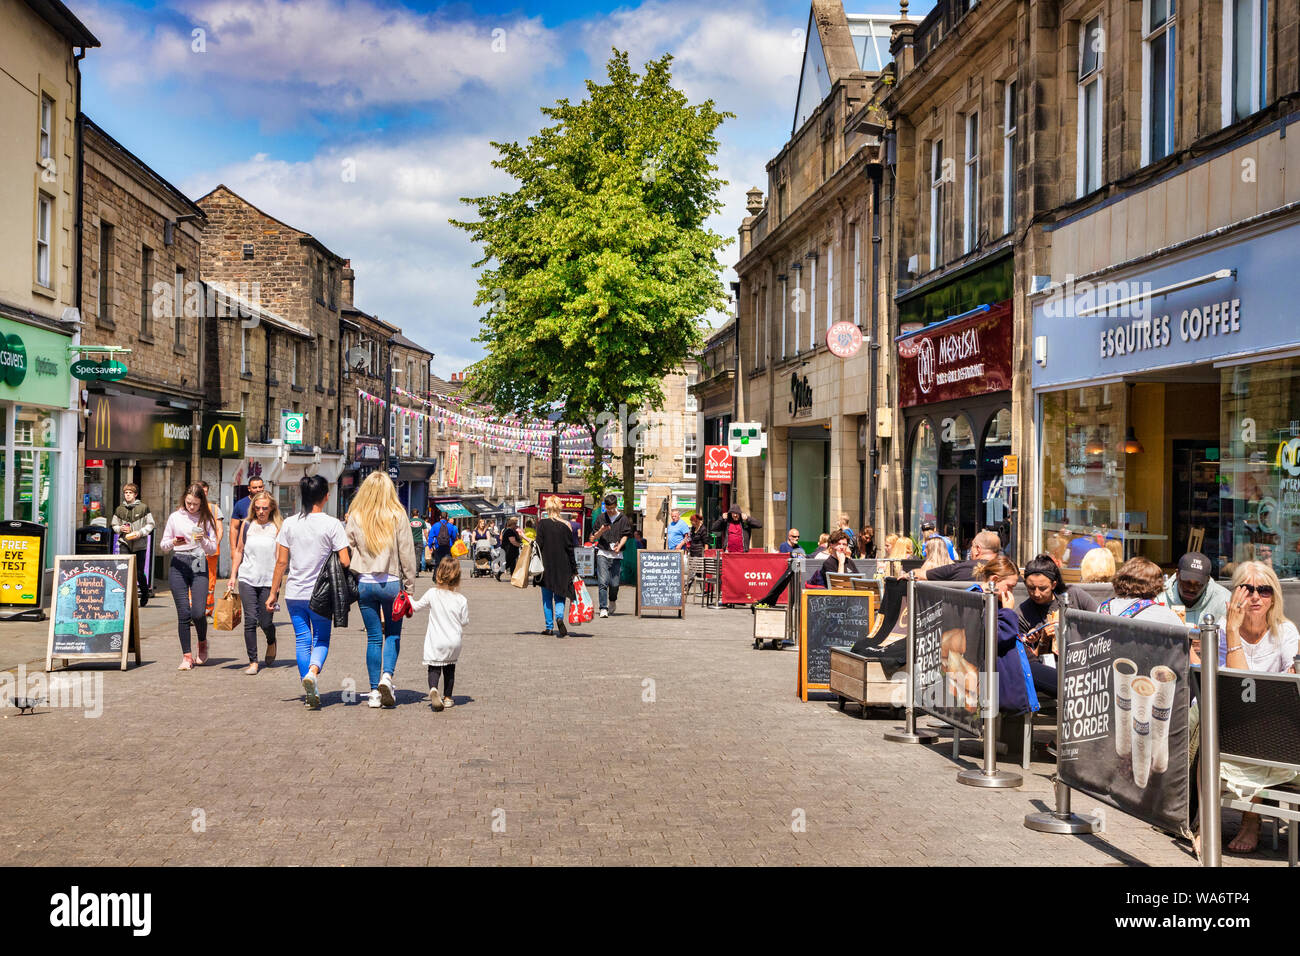 12 Juli 2019: Lancaster, UK - Eine anstrengenden Tag in Cheapside, der Haupteinkaufsstraße von der historischen Stadt, an einem sonnigen Tag, mit Shoppen und Stockfoto